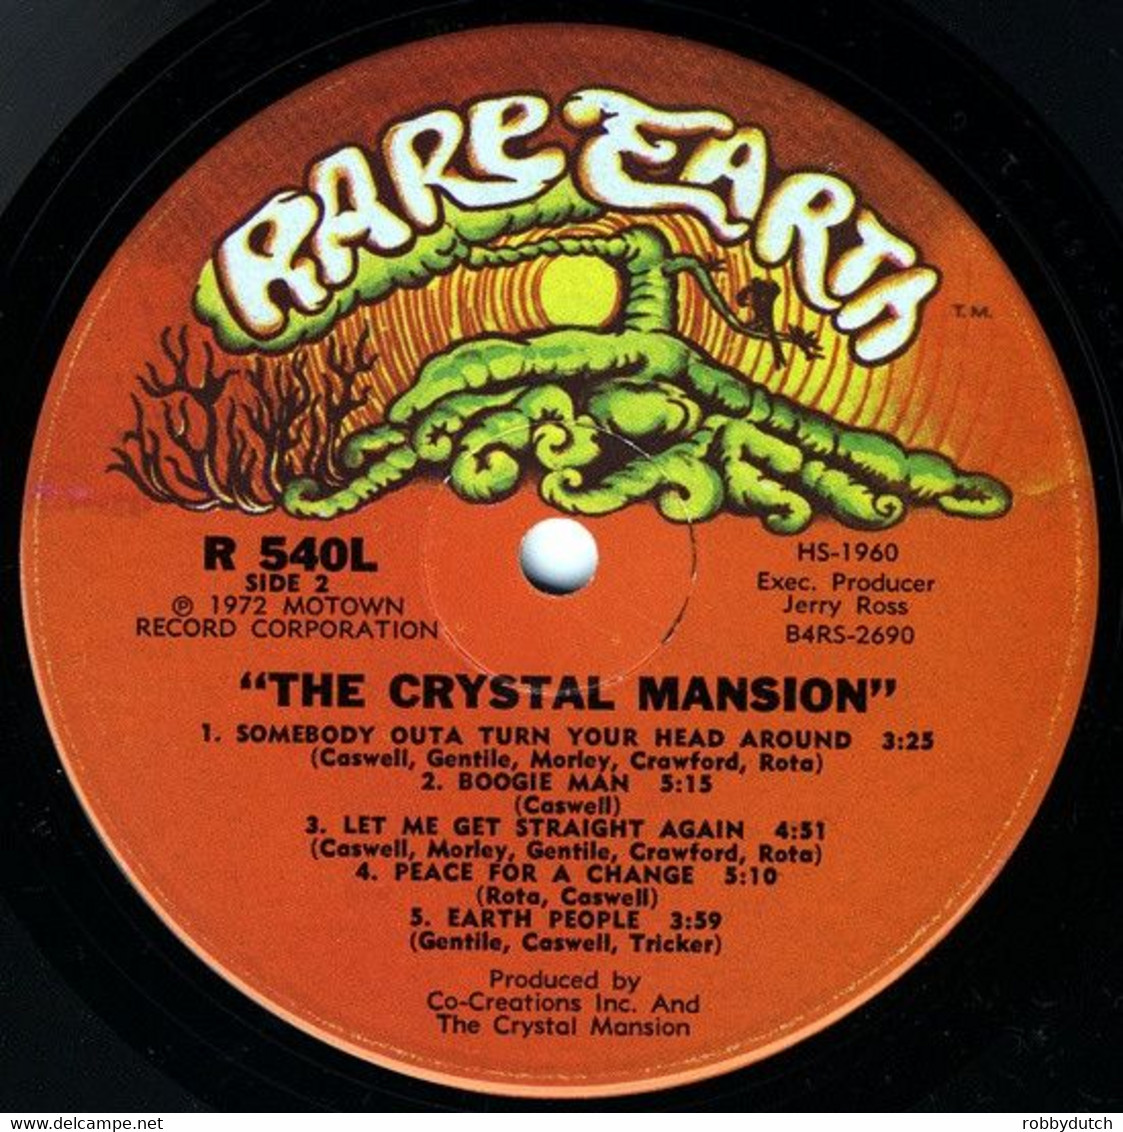 * LP * THE CRYSTAL MANSION - SAME (USA 1972 on Rare Earth)